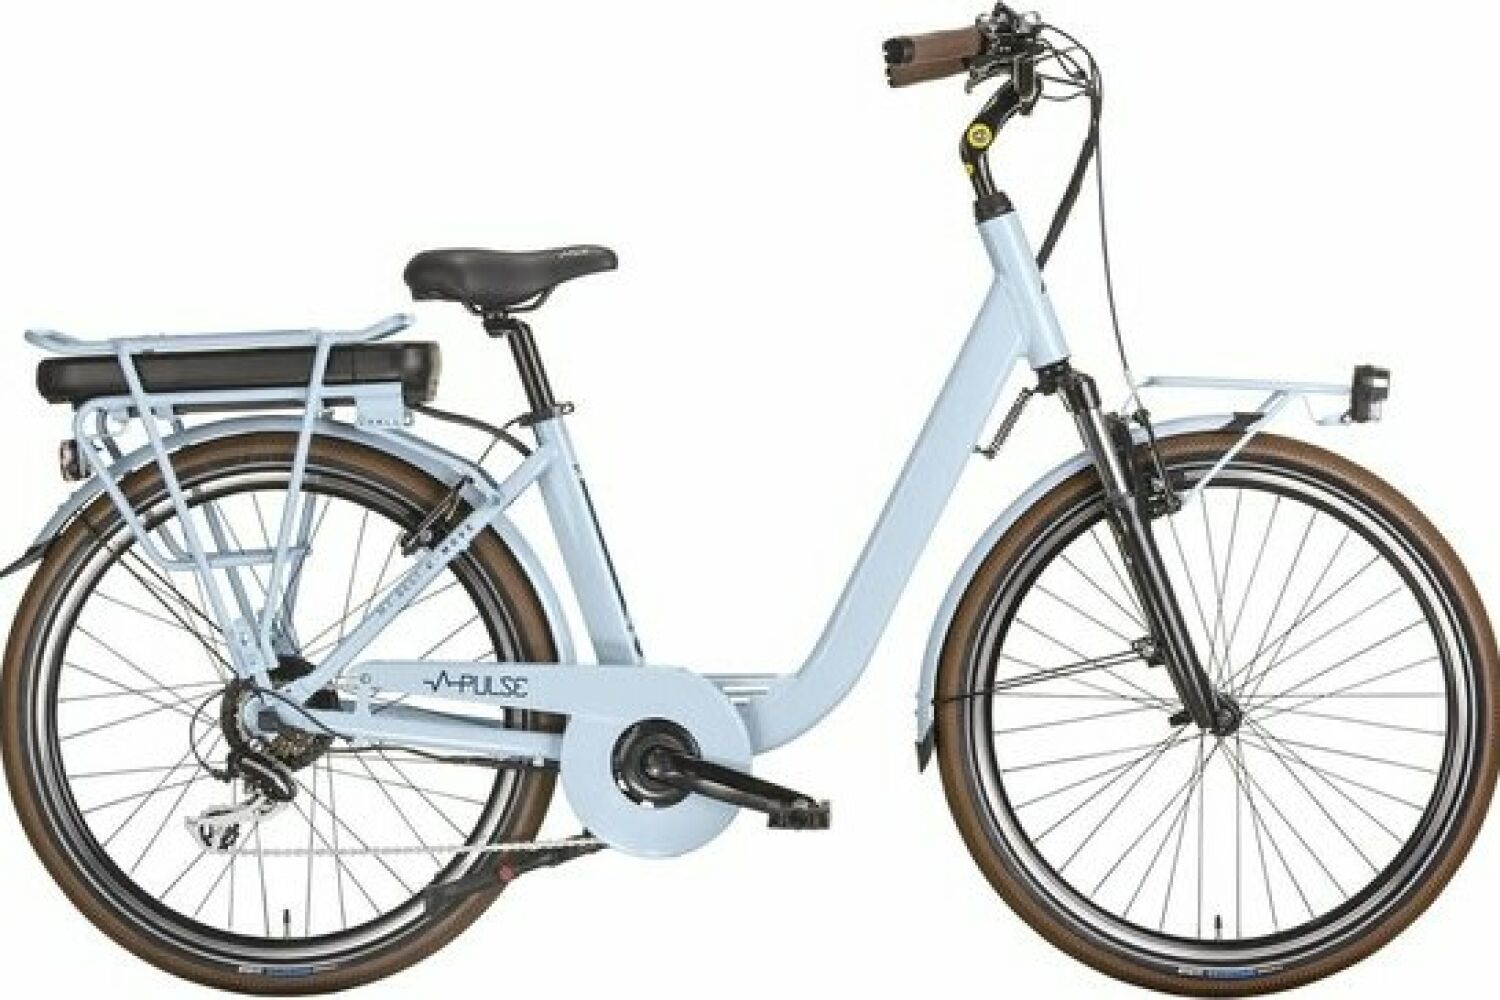 Elektrische fiets 28 inch